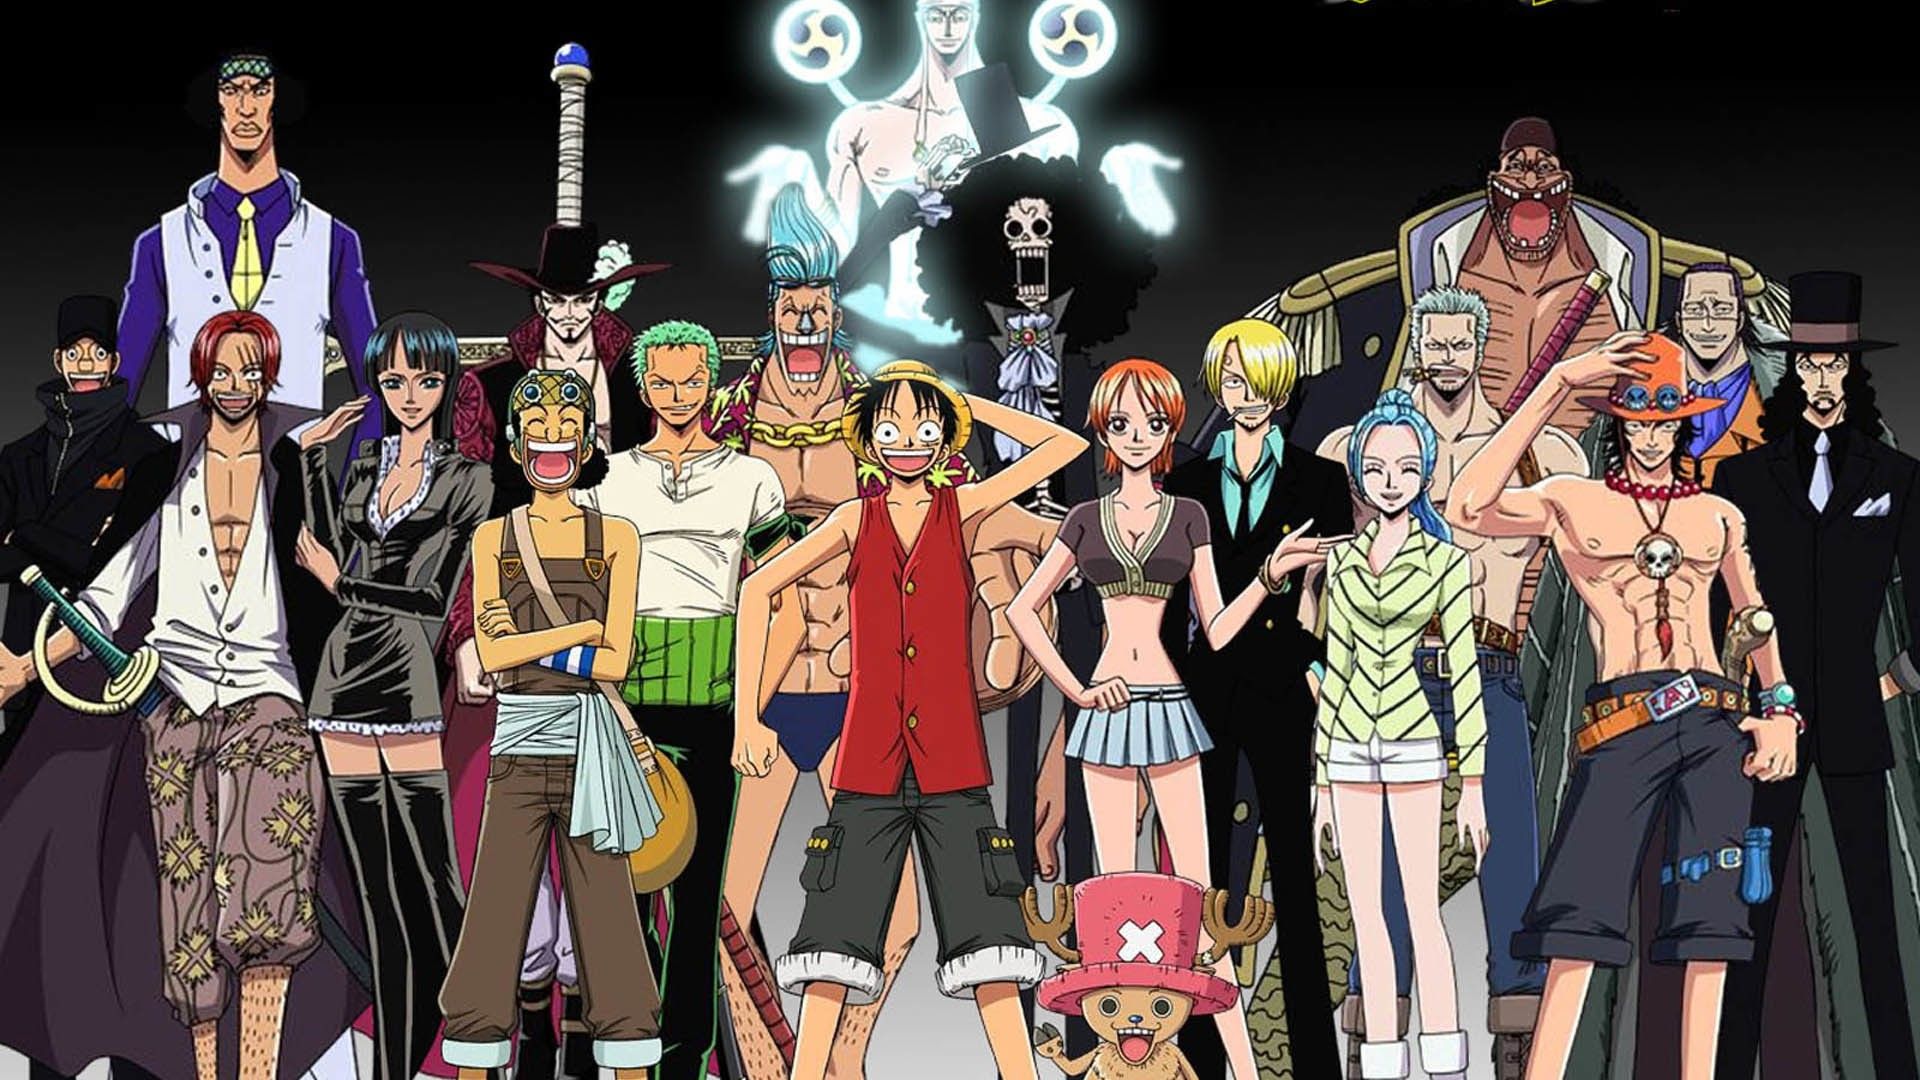 Best Of One Piece Wallpaper for Macbook Pro. One piece crew, One piece episodes, One piece manga